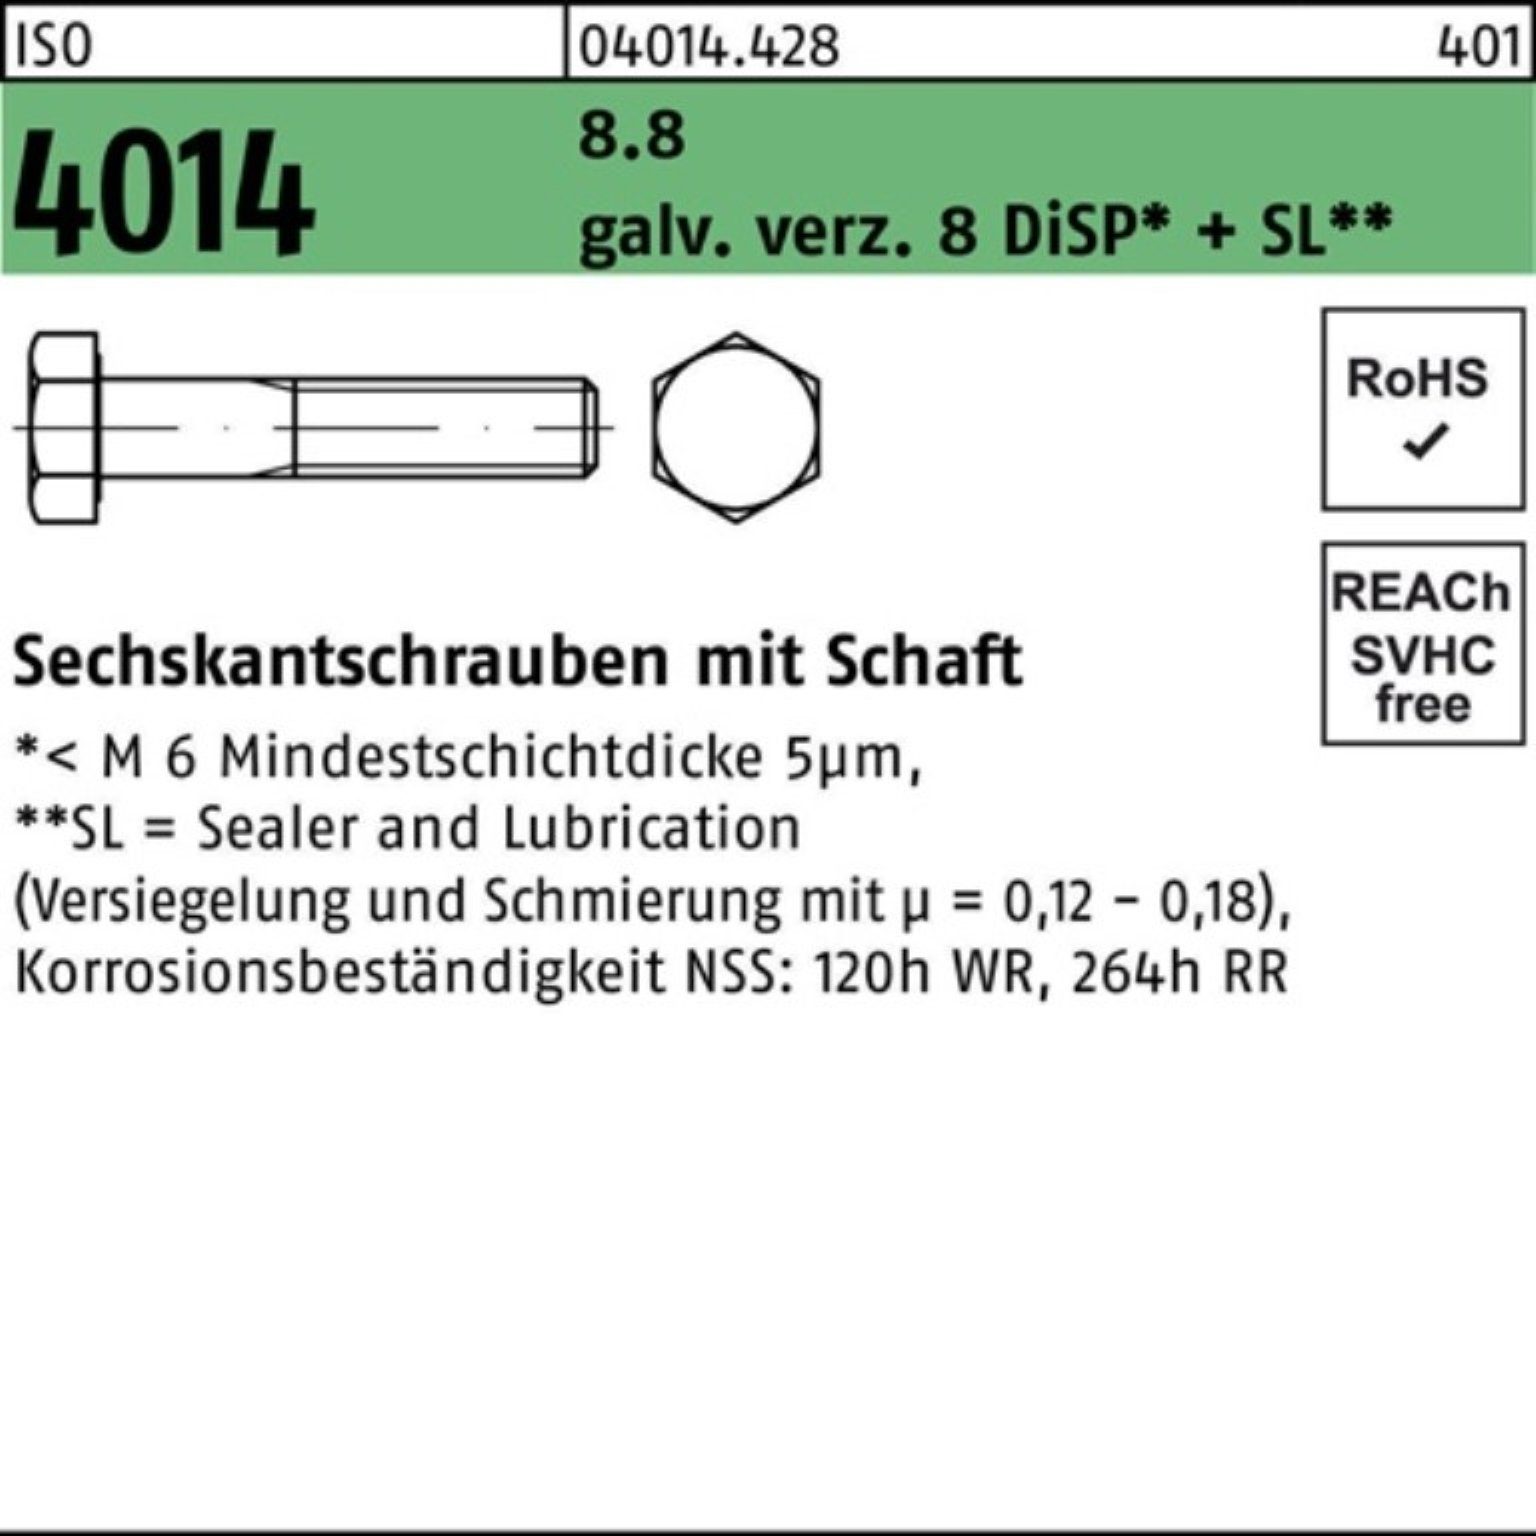 ISO Bufab 100er galv.verz. M10x170 4014 8 Sechskantschraube 8.8 Pack Sechskantschraube Schaft